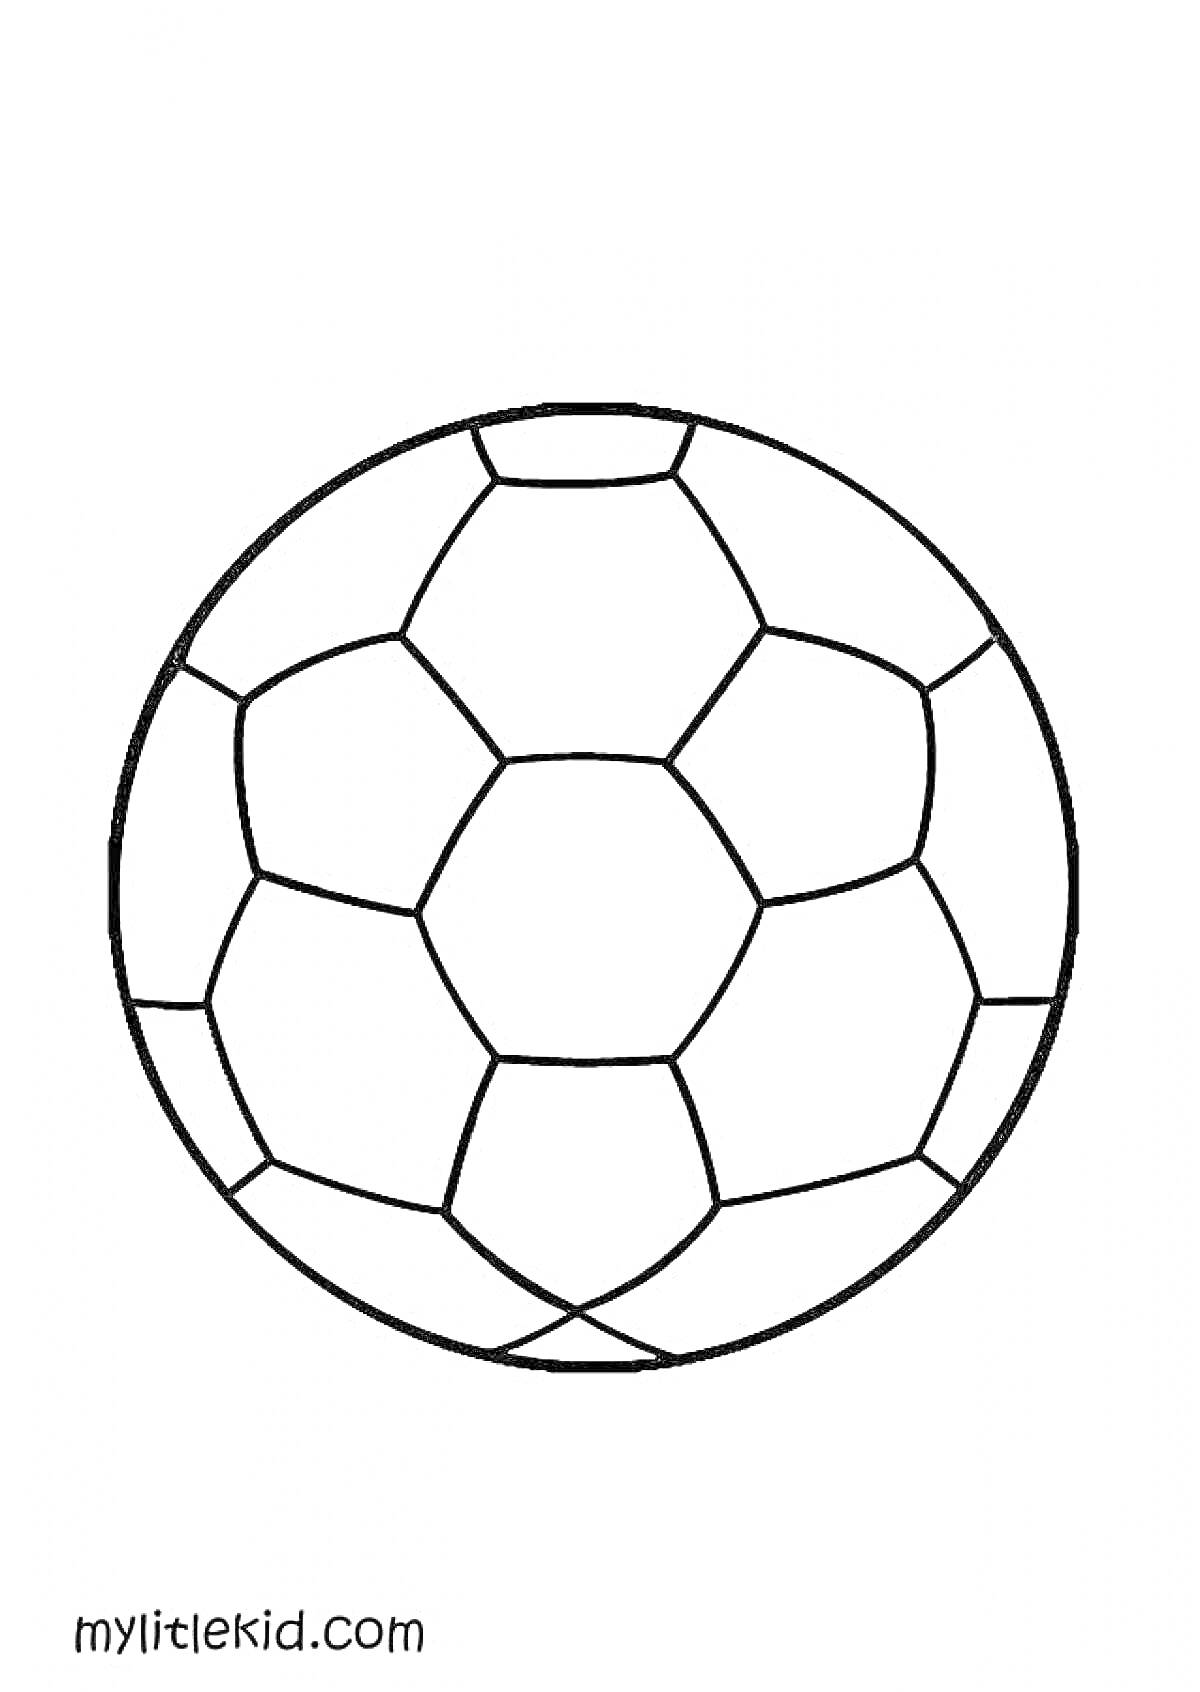 Раскраска Ракурска футбольного мяча, структура из пятиугольников и шестиугольников